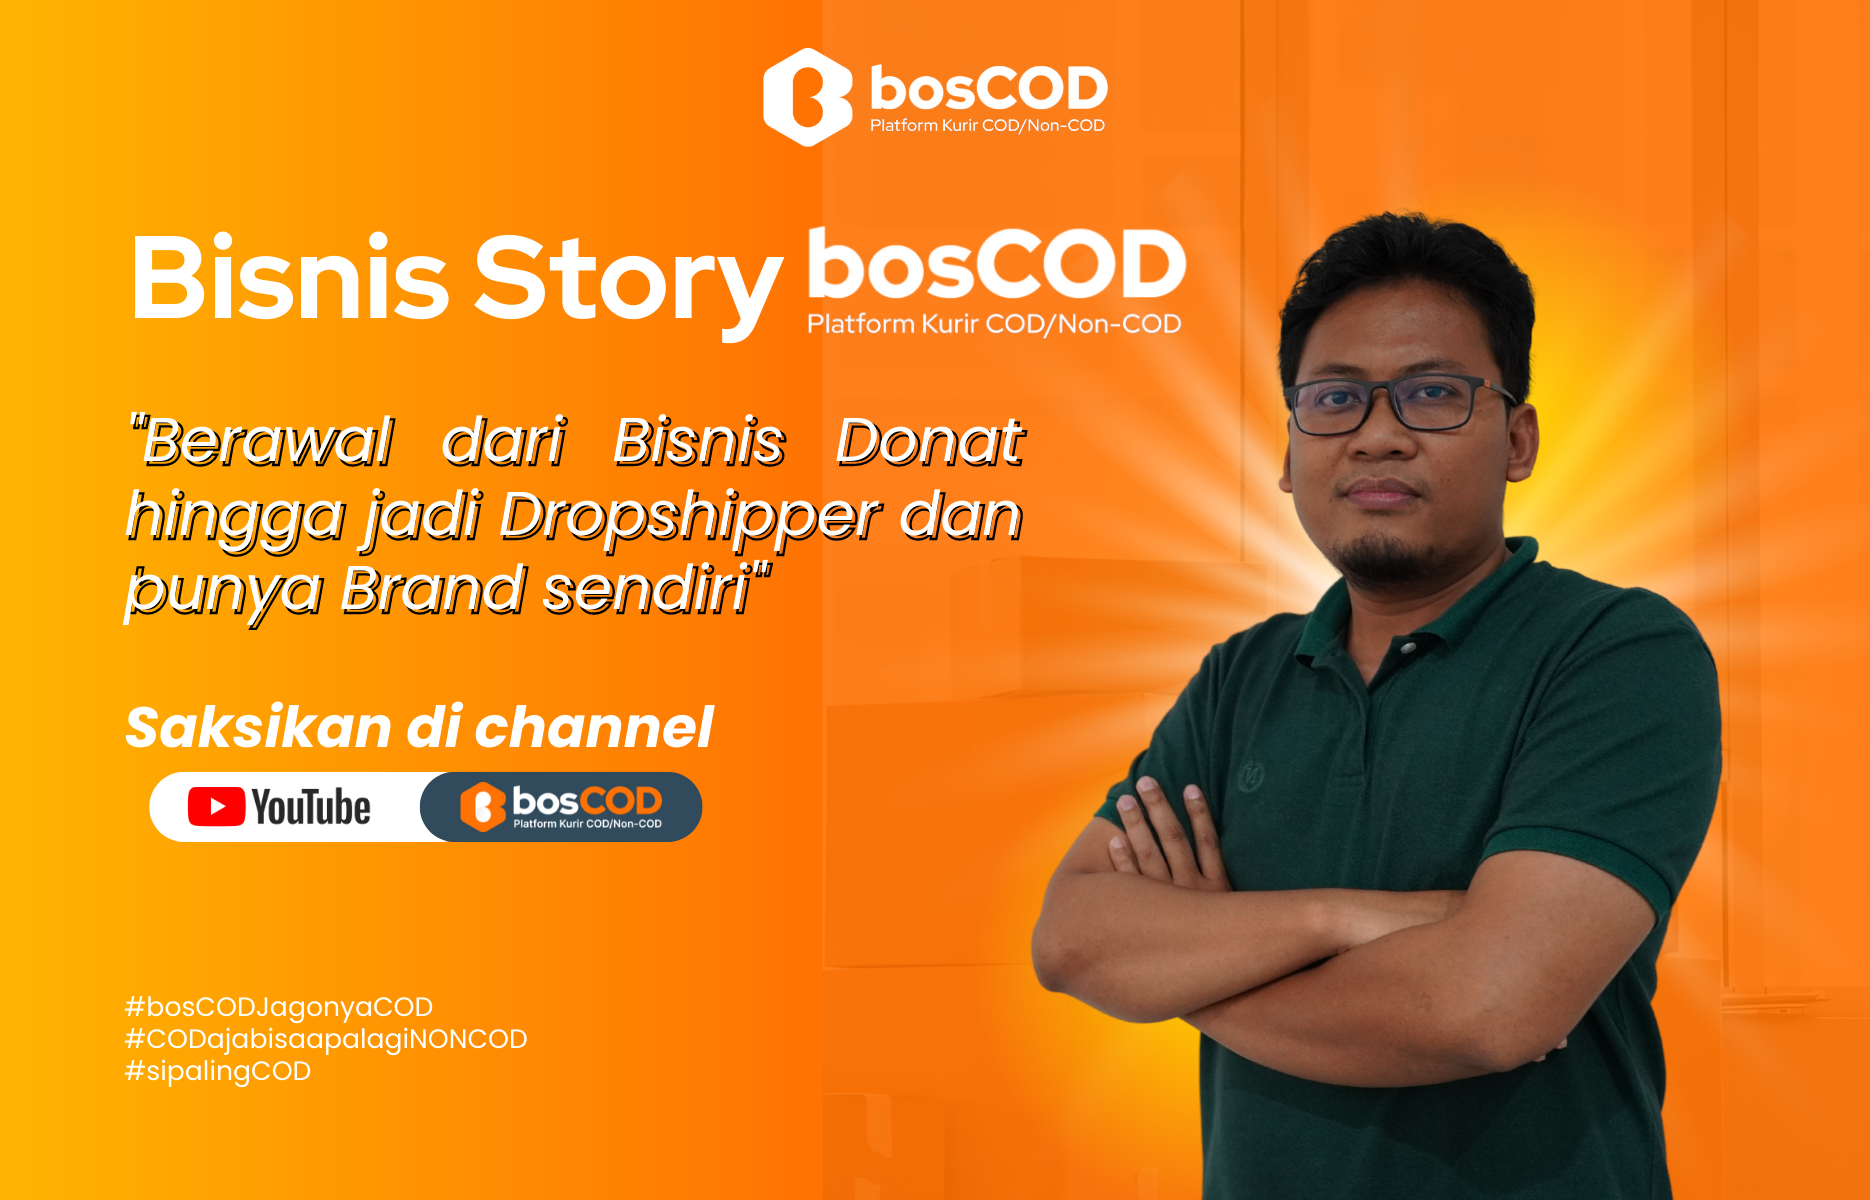 Bisnis Story bosCOD | Down karena jualan donat kini bisa punya Bisnis dropshipper sendiri dan Brand sendiri